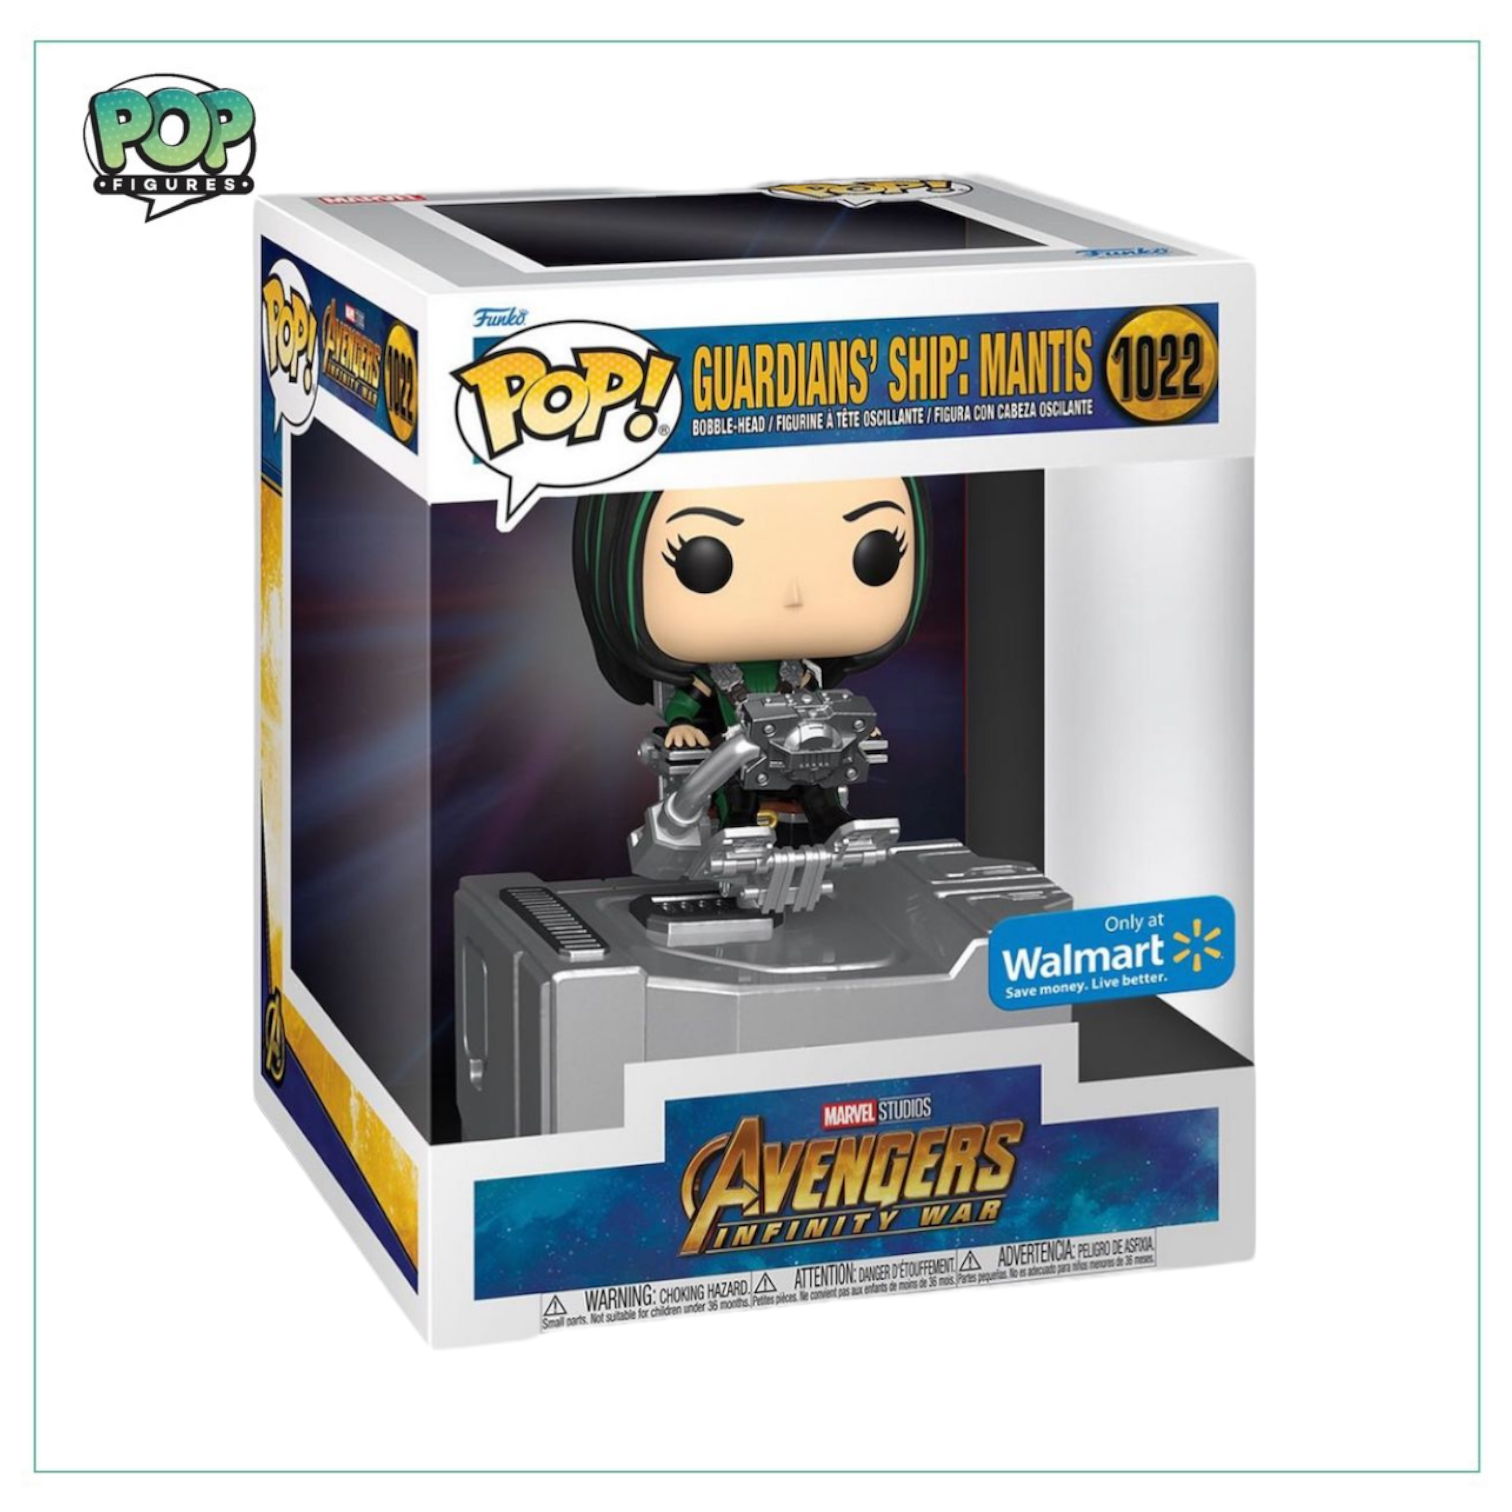 Guardians’ Ship: Mantis #1022 Funko Pop! Deluxe Avengers Infinity War - Walmart Exclusive